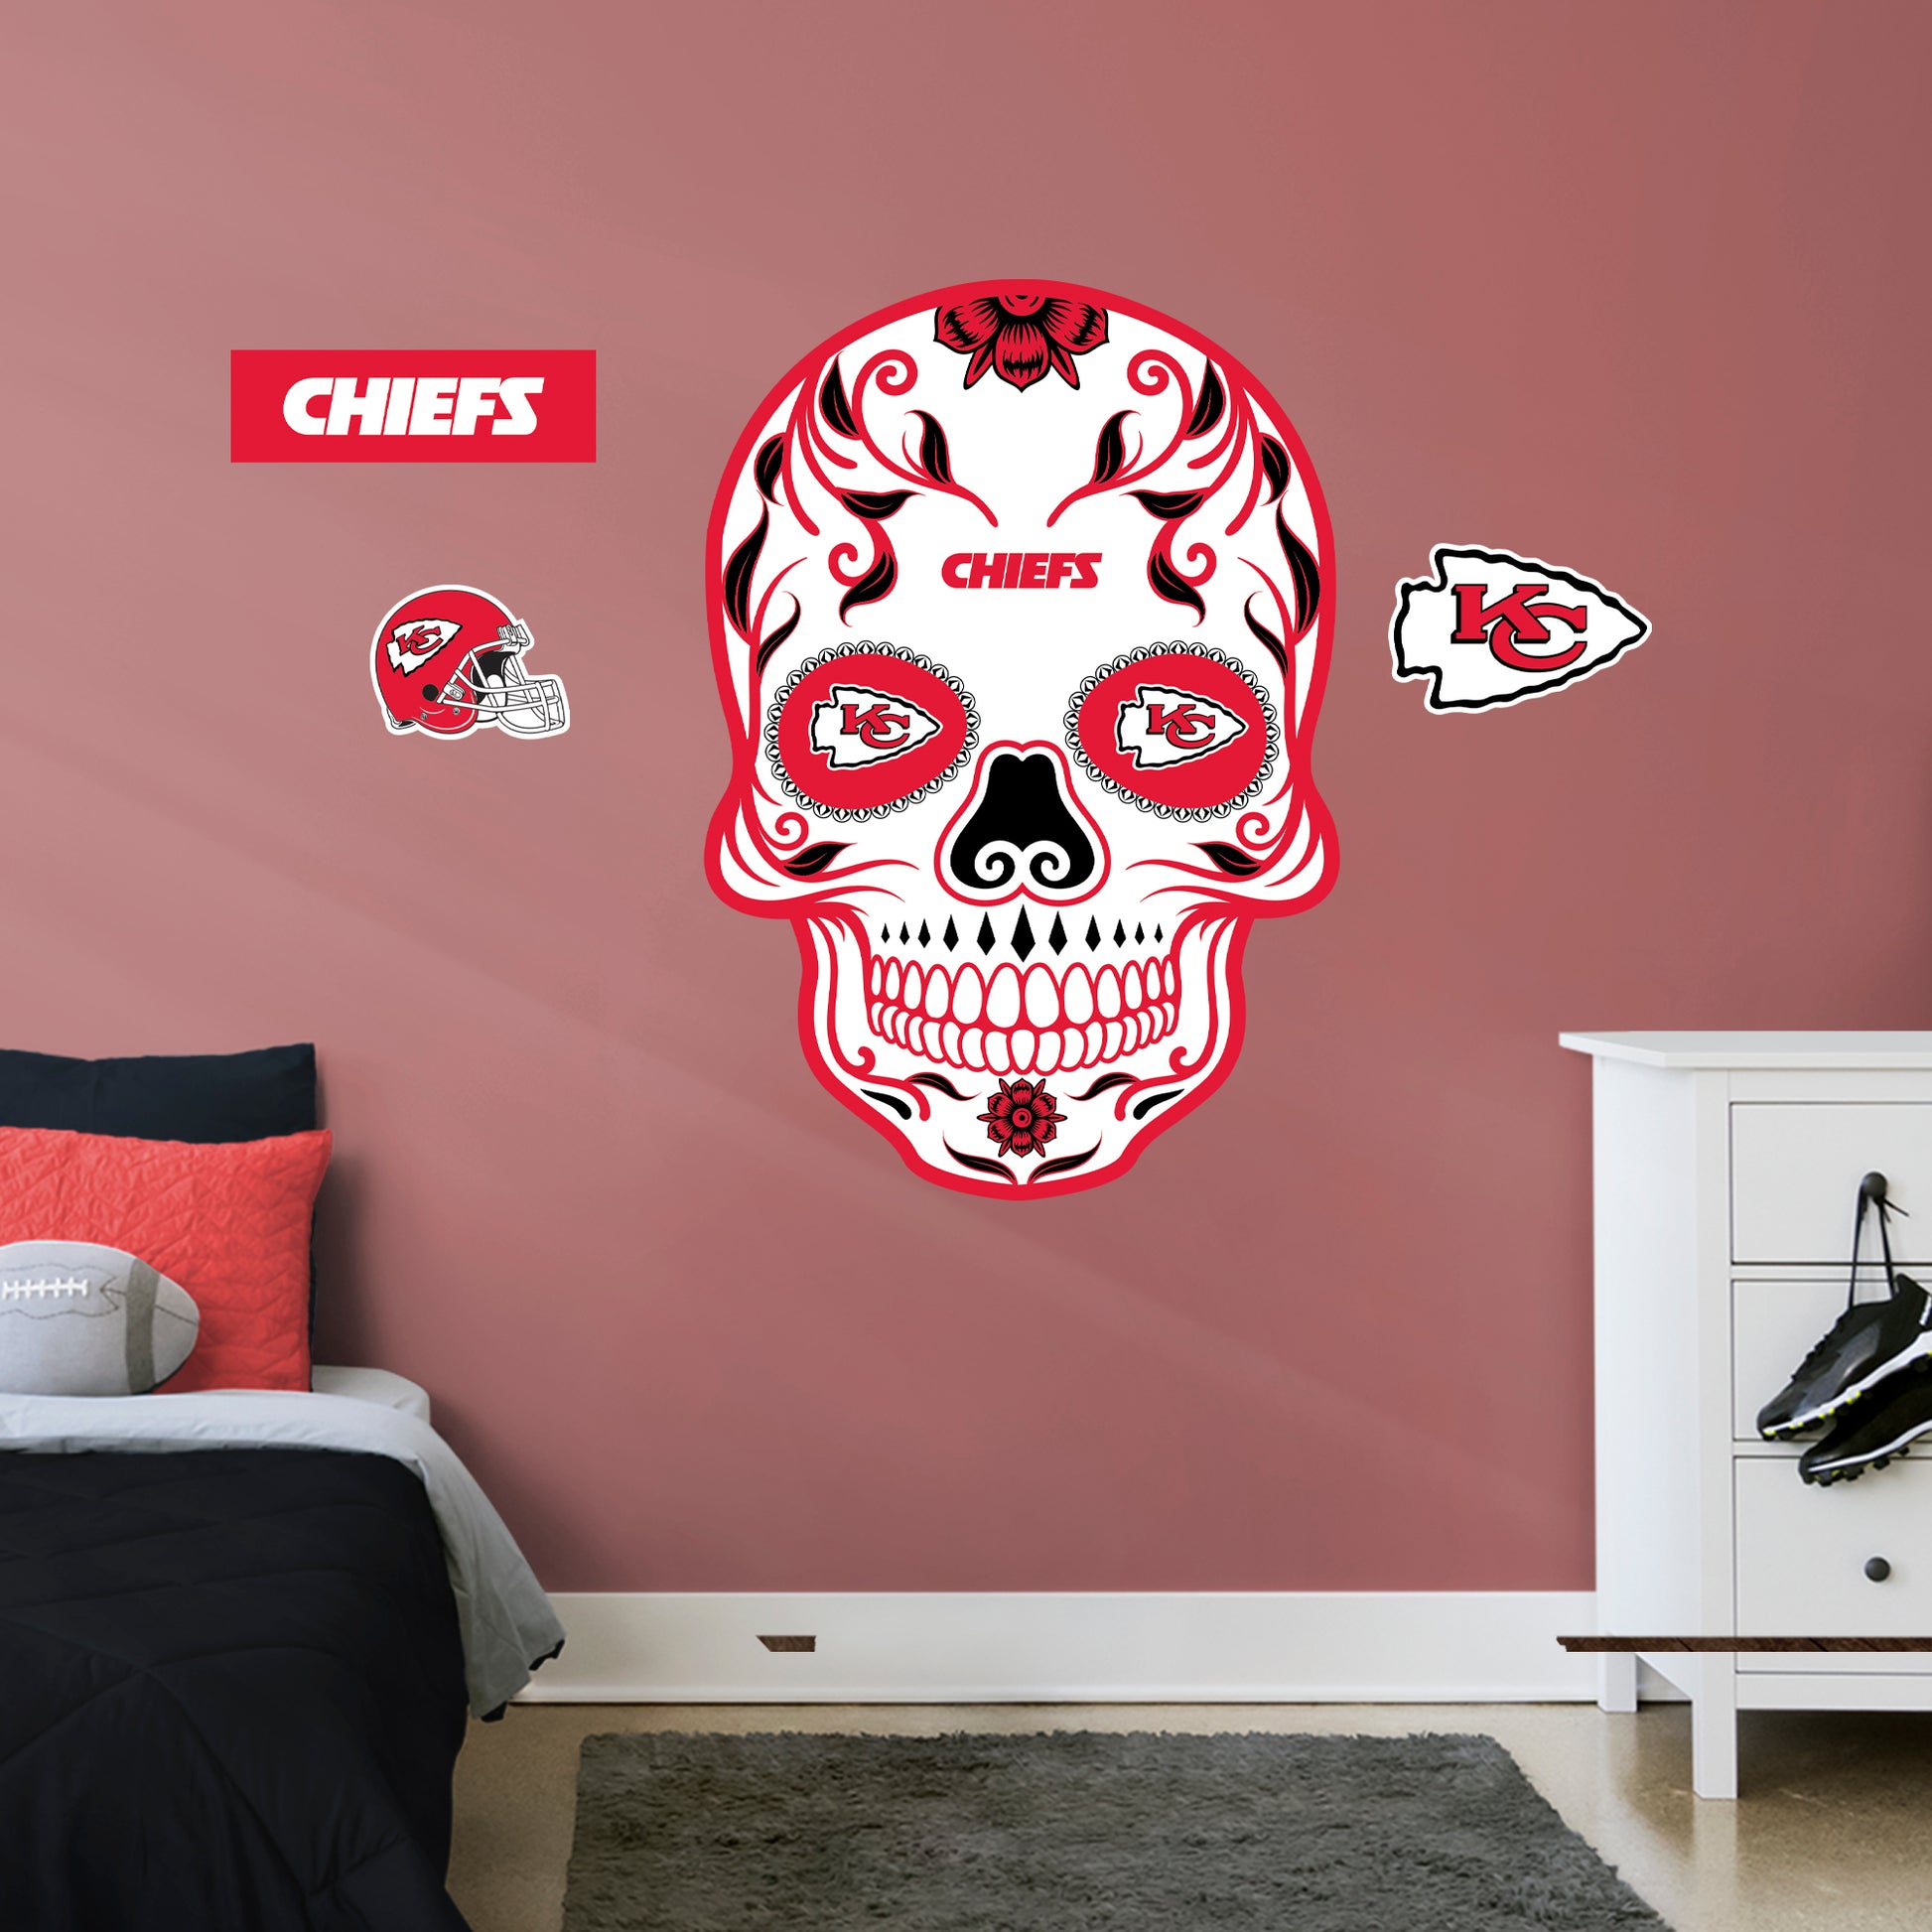 Kansas City Chiefs Decal Sticker 